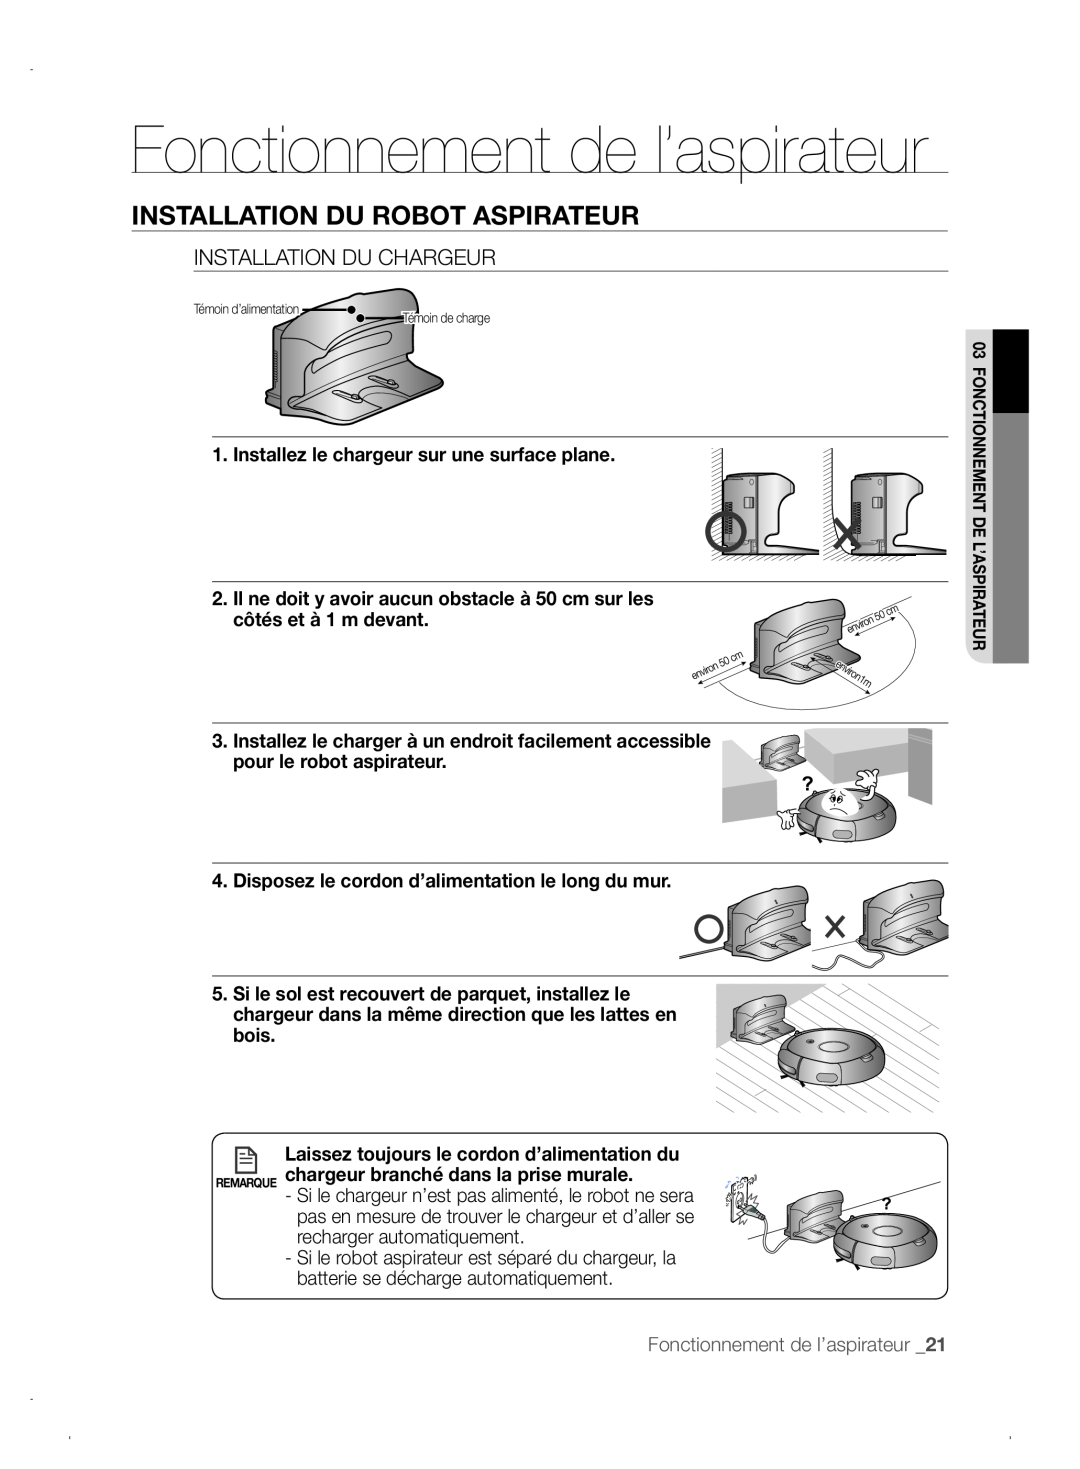 Samsung VCR8845T3A/XEO manual Fonctionnement de l’aspirateur, Installation Du Robot Aspirateur, Installation Du Chargeur 